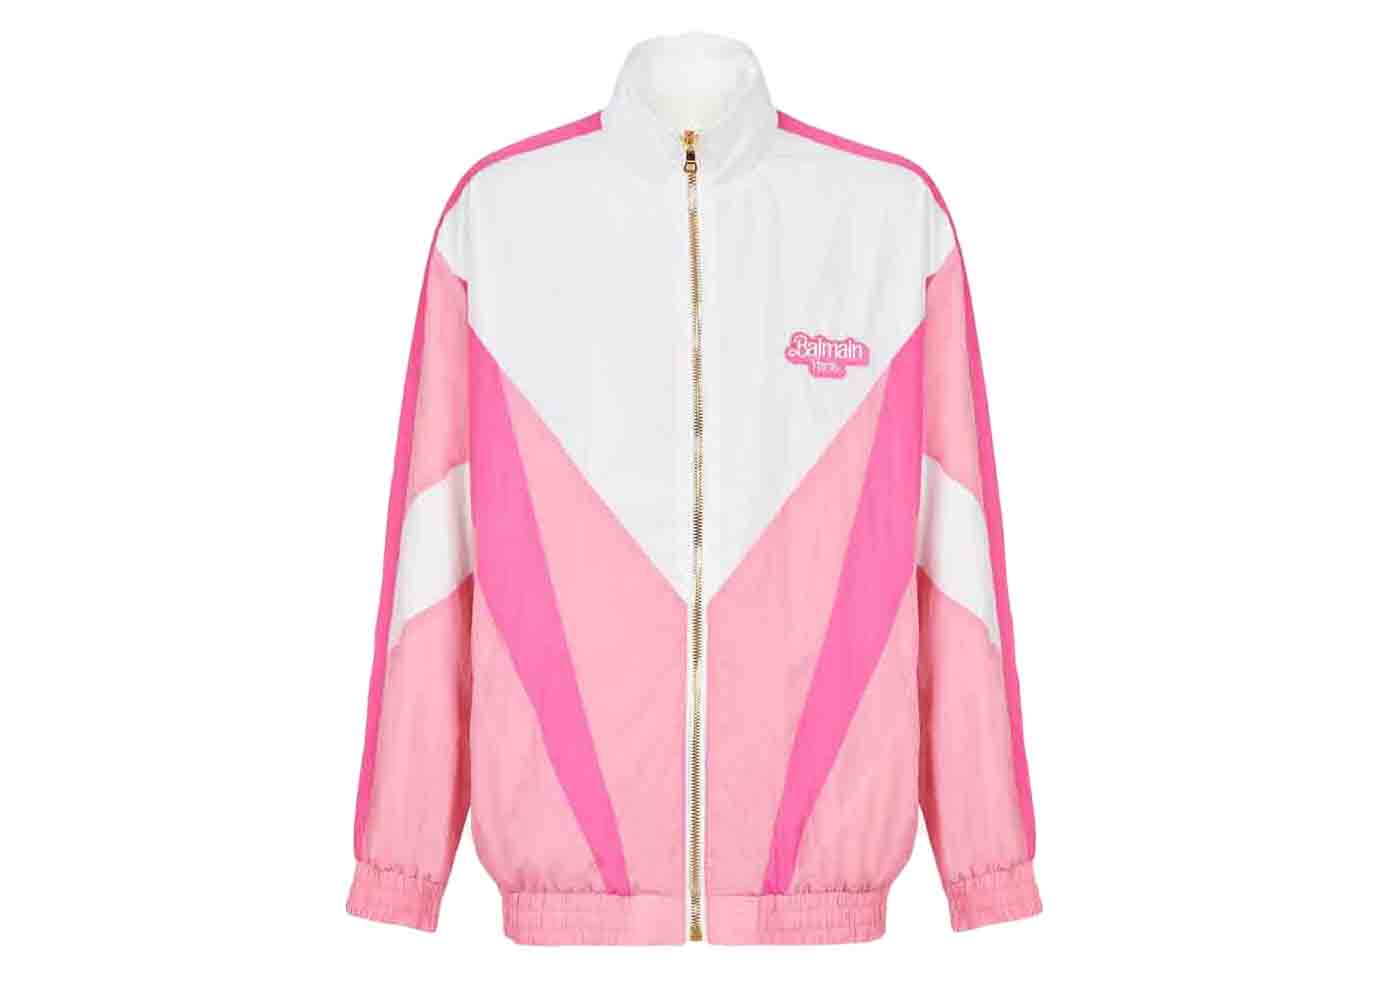 Balmain x Barbie - Nylon Jacket Pink and White - FW21